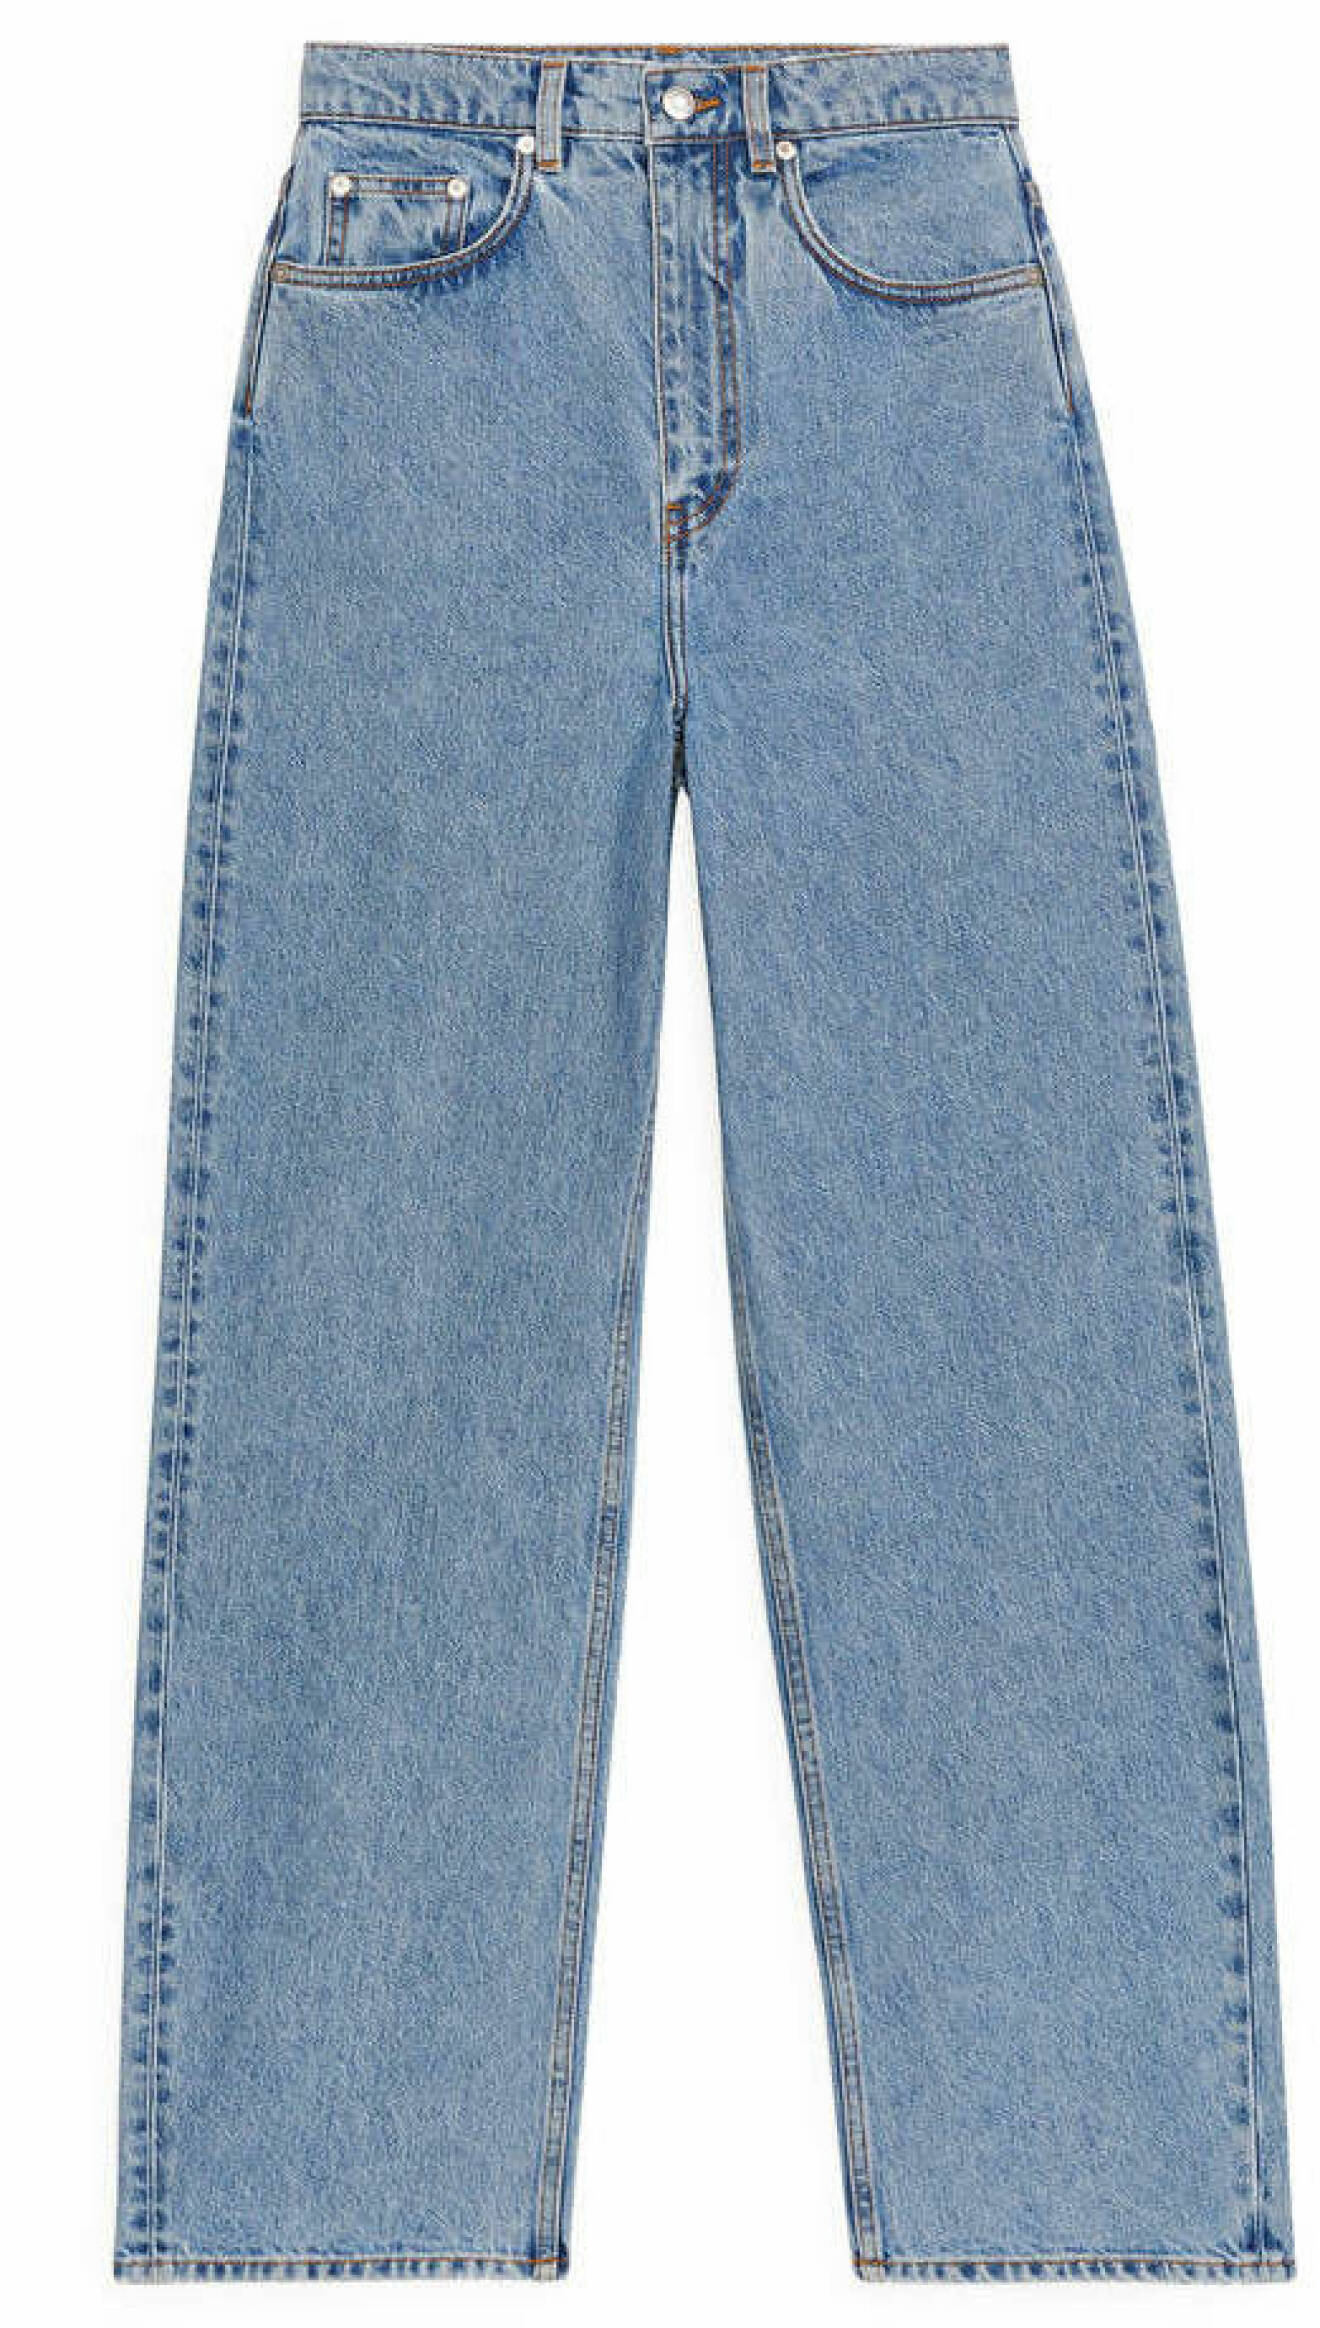 Jeans från Arket med luftig och mjuk passform